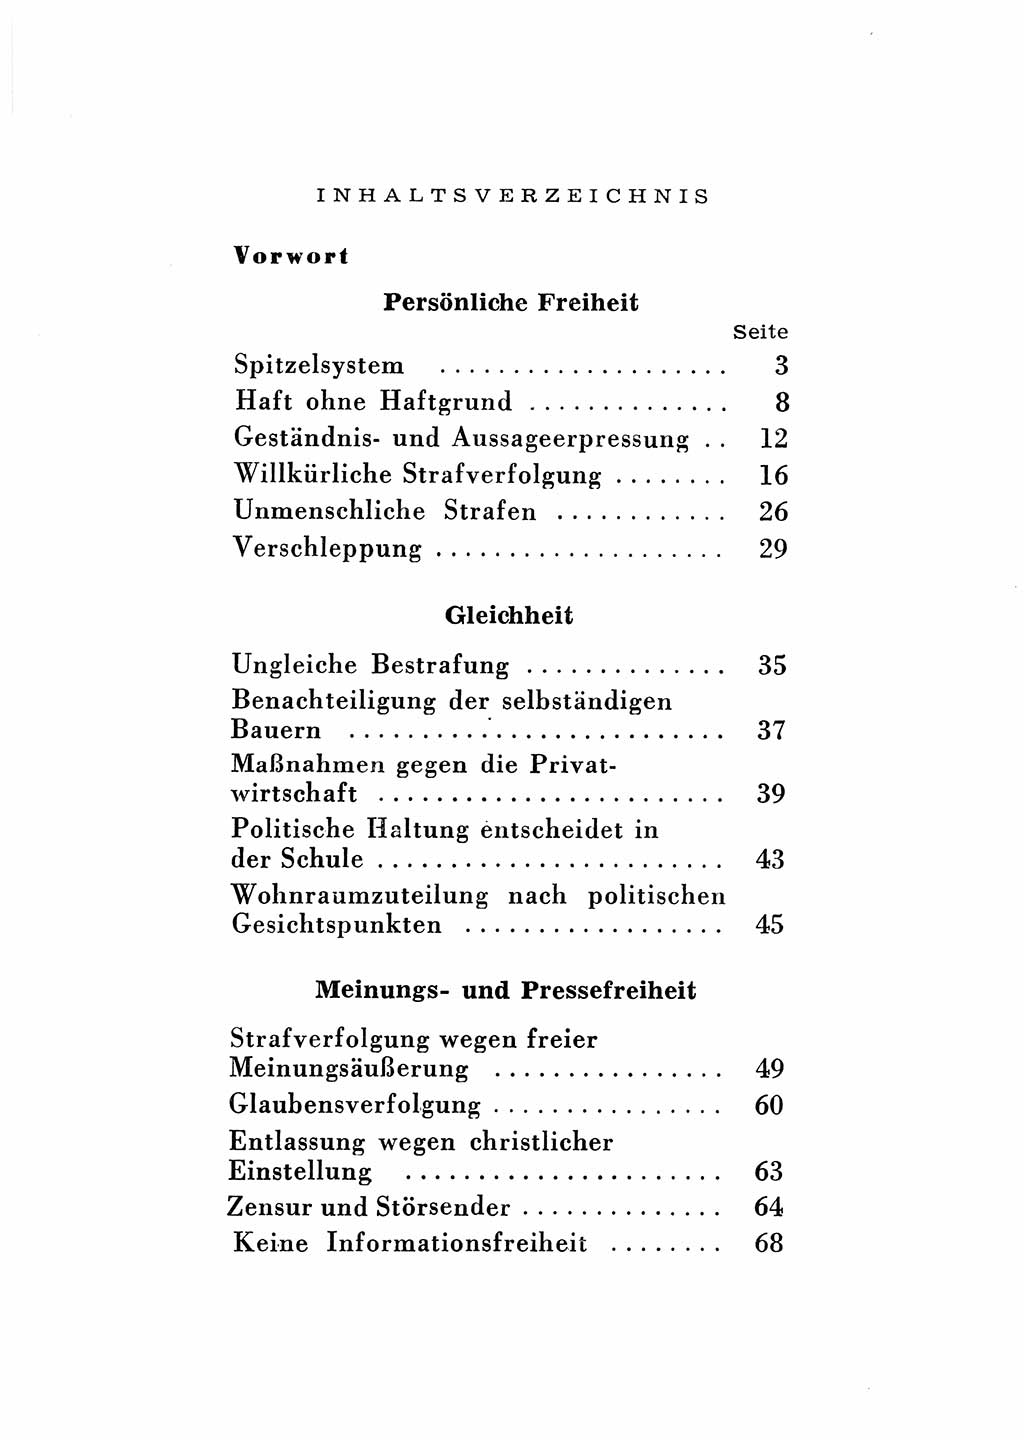 Katalog des Unrechts, Untersuchungsausschuß Freiheitlicher Juristen (UfJ) [Bundesrepublik Deutschland (BRD)] 1956, Seite 8 (Kat. UnR. UfJ BRD 1956, S. 8)